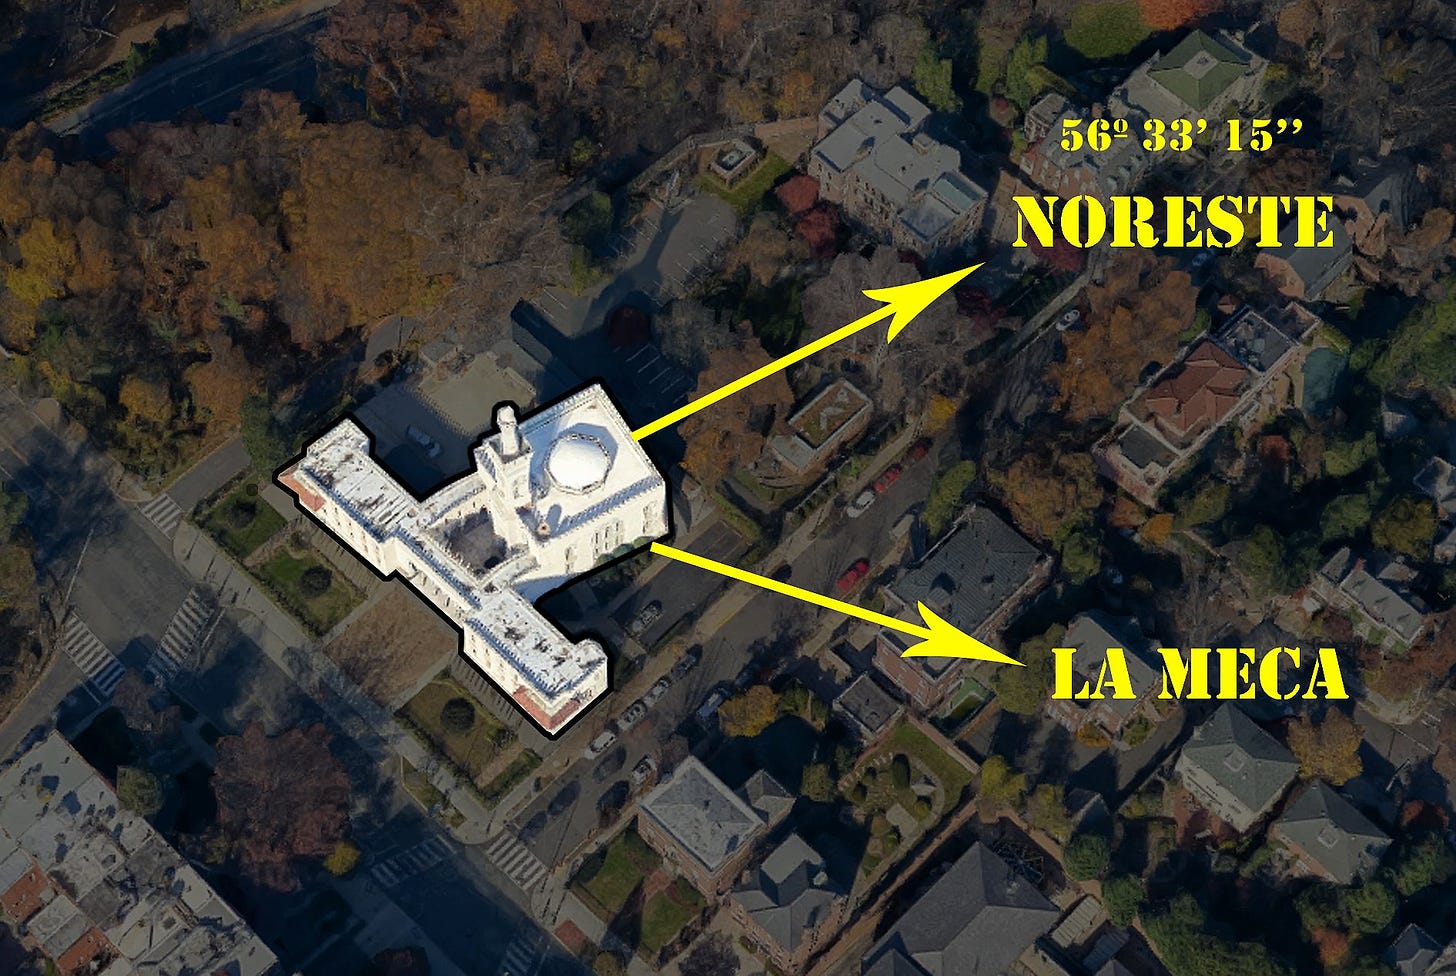 Imagen 3D de Google donde se ve que la dirección a la que se orienta la mezquita es el Noreste, mientras que otra flecha señala a La Meca, al sureste. 